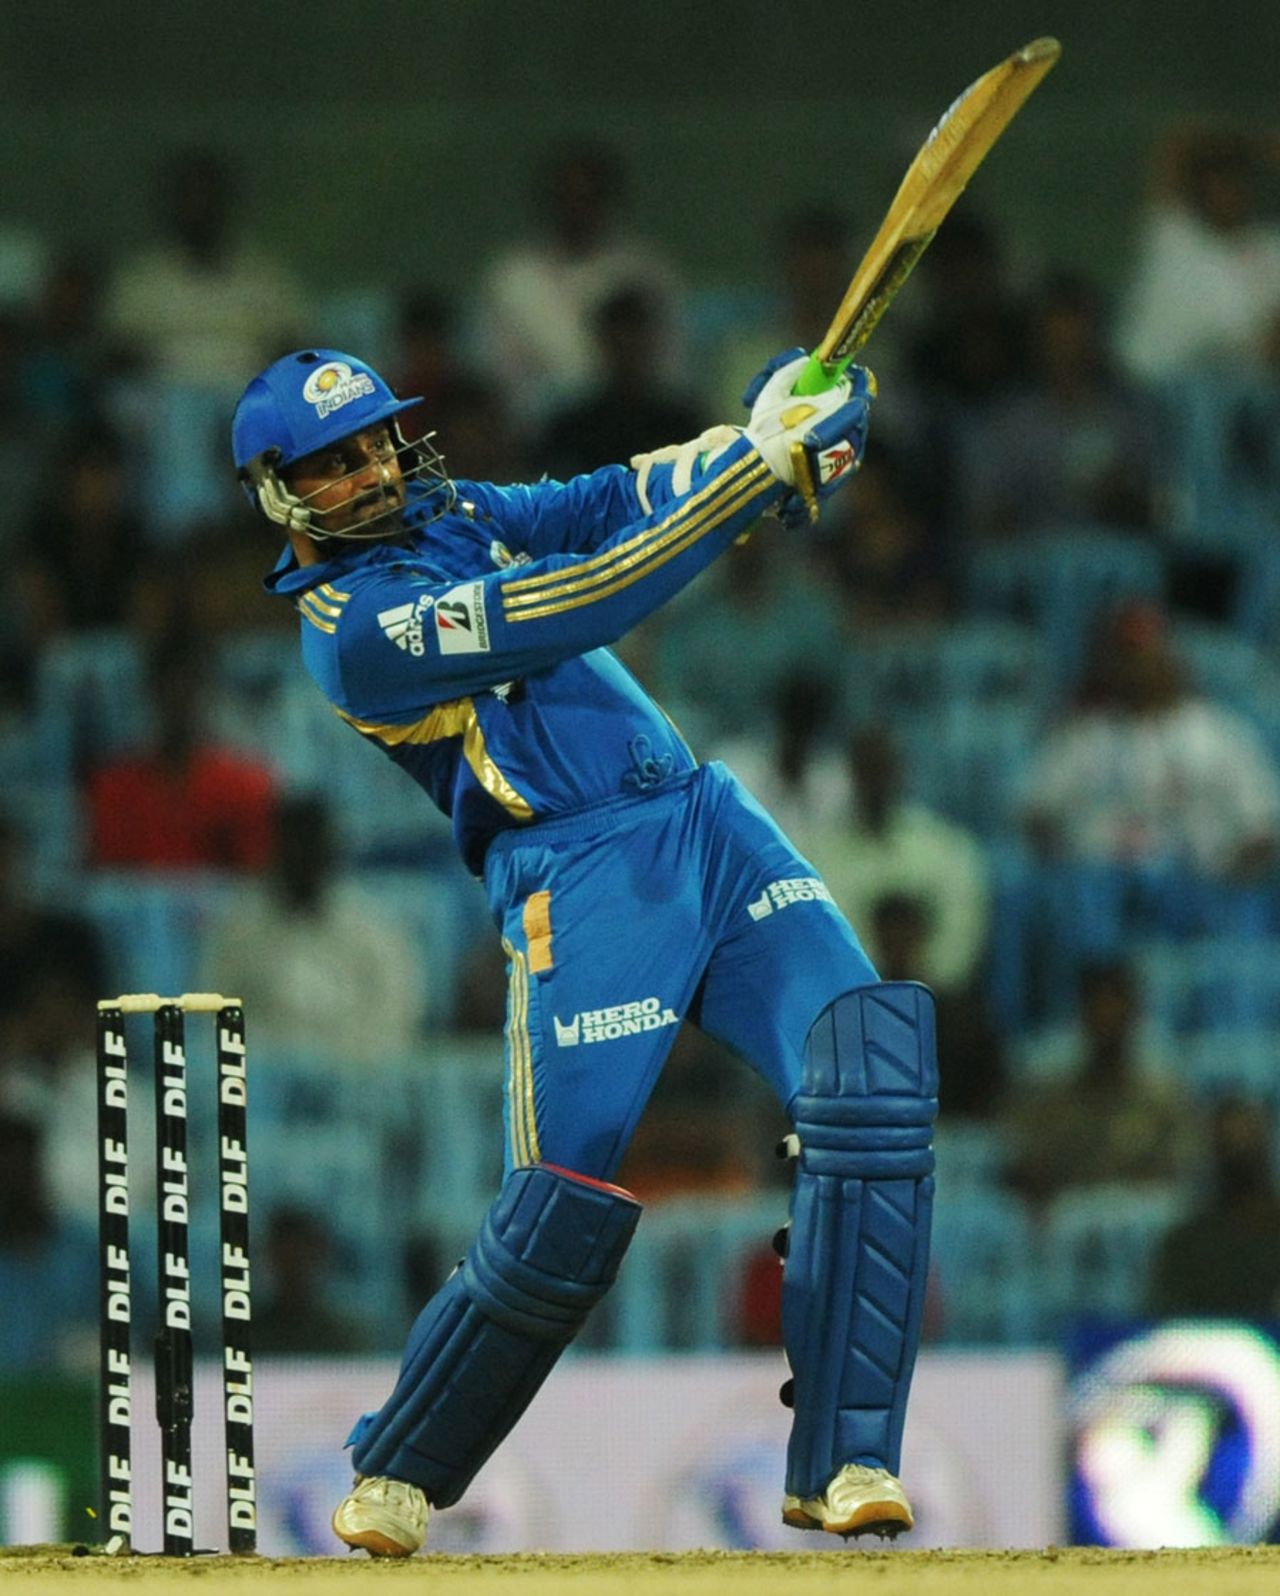 Harbhajan Singh slugs one over midwicket, Bangalore v Mumbai, 2nd qualifier, IPL 2011, Chennai, May 27, 2011